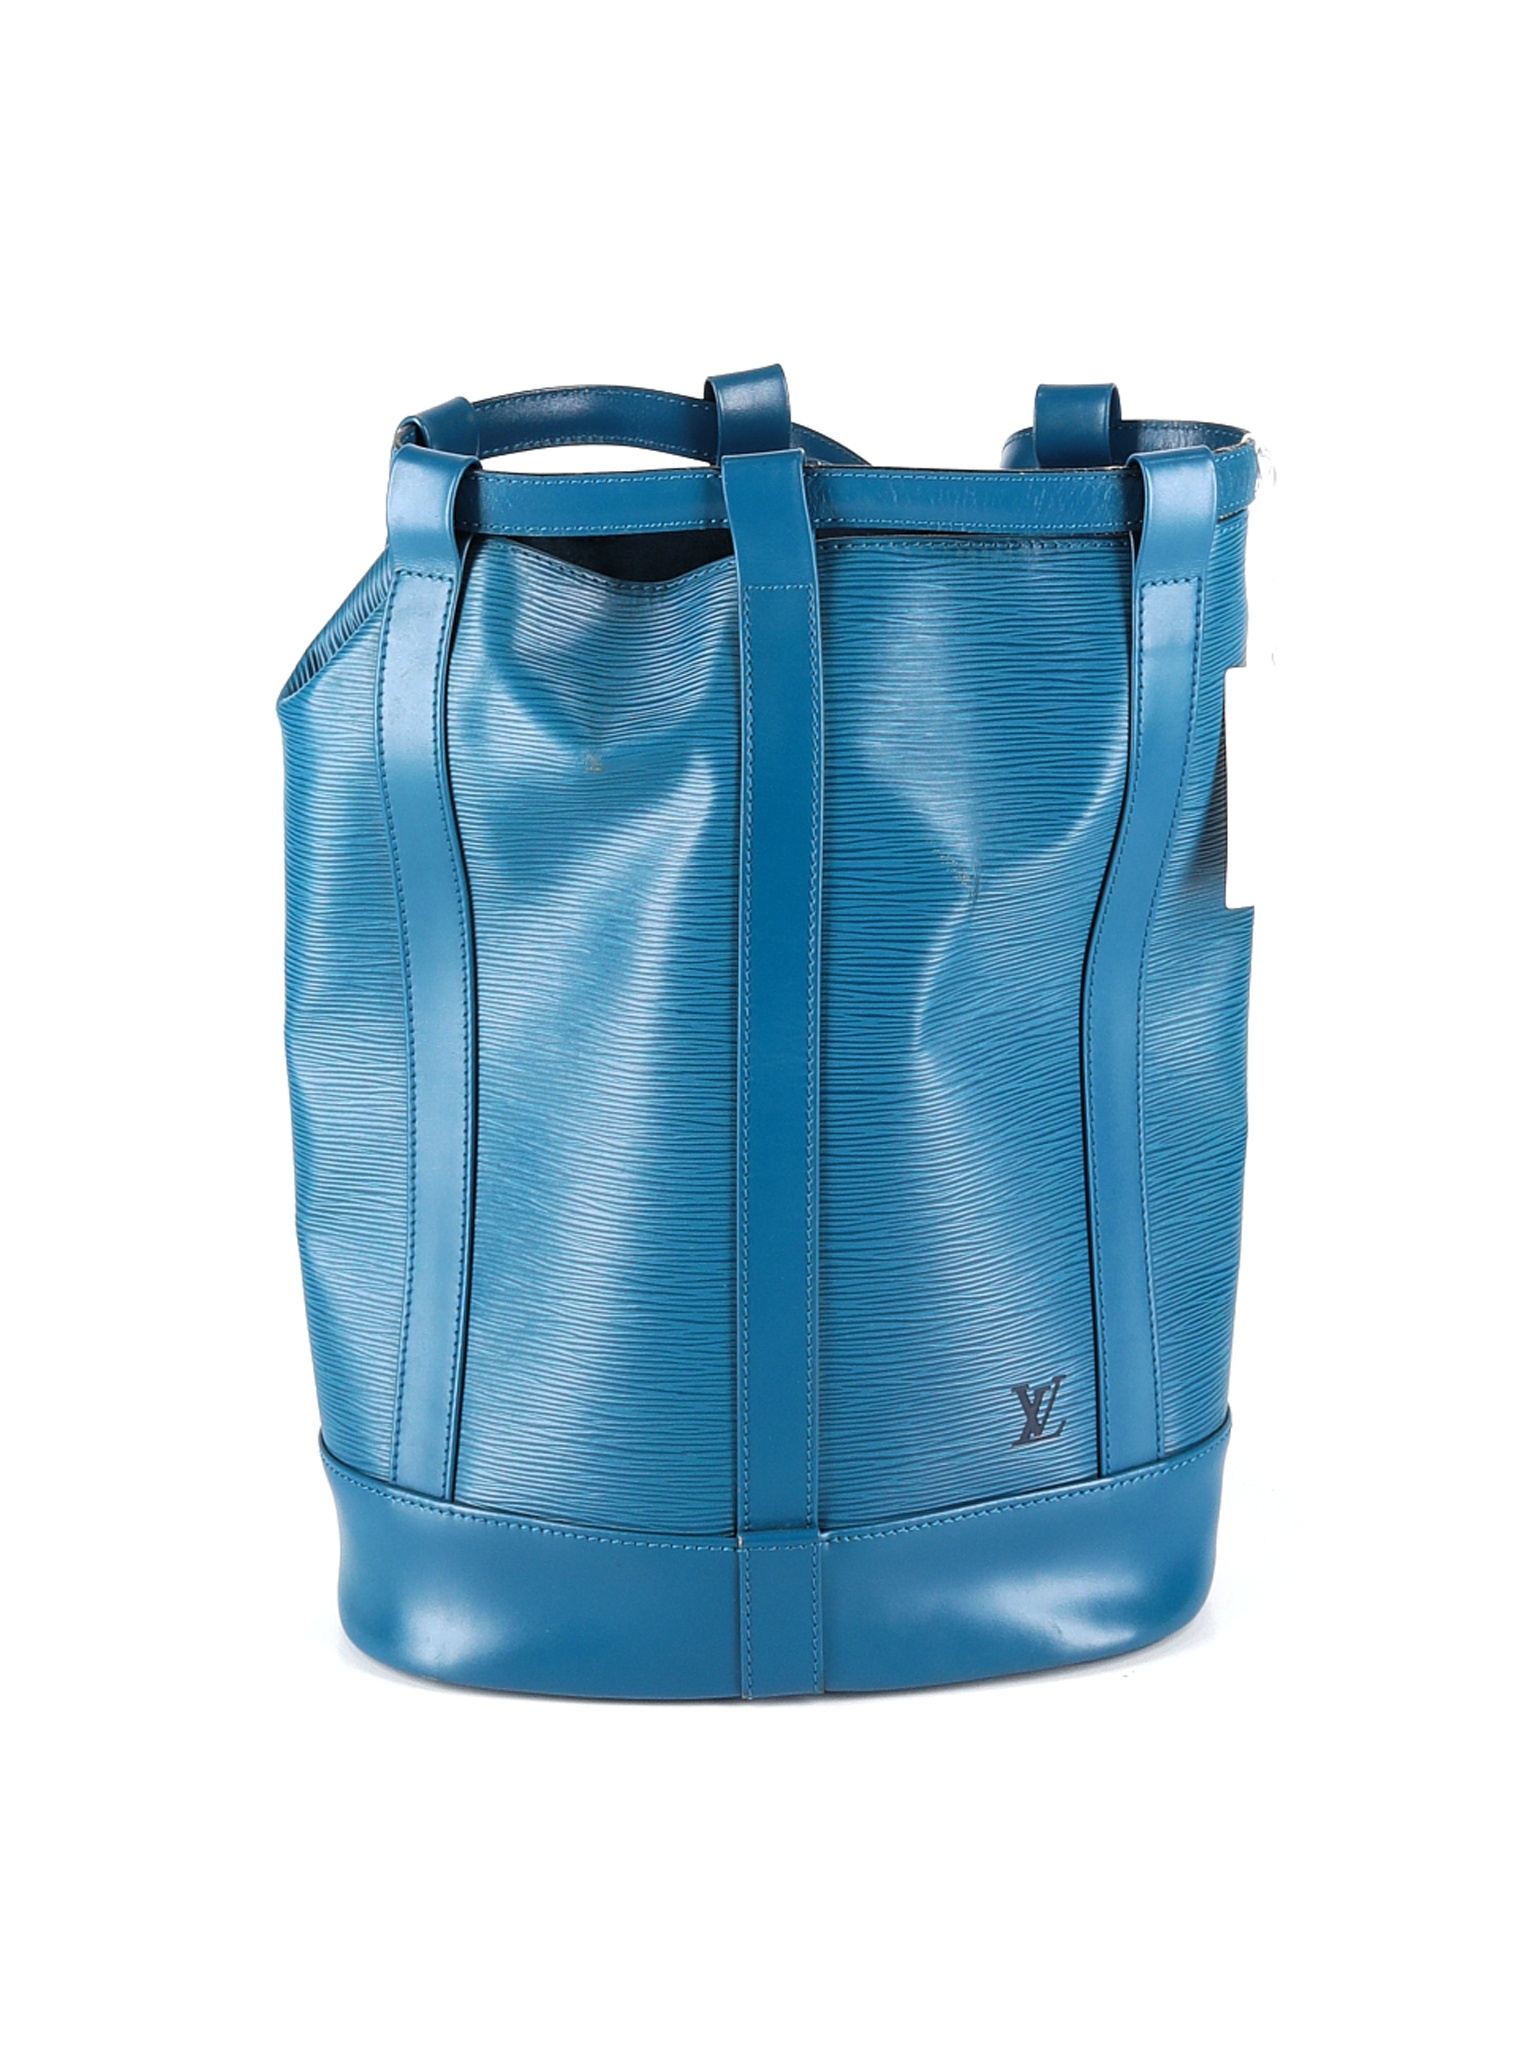 Hilsen Gendanne eftertænksom Louis Vuitton Backpacks On Sale Up To 90% Off Retail | thredUP